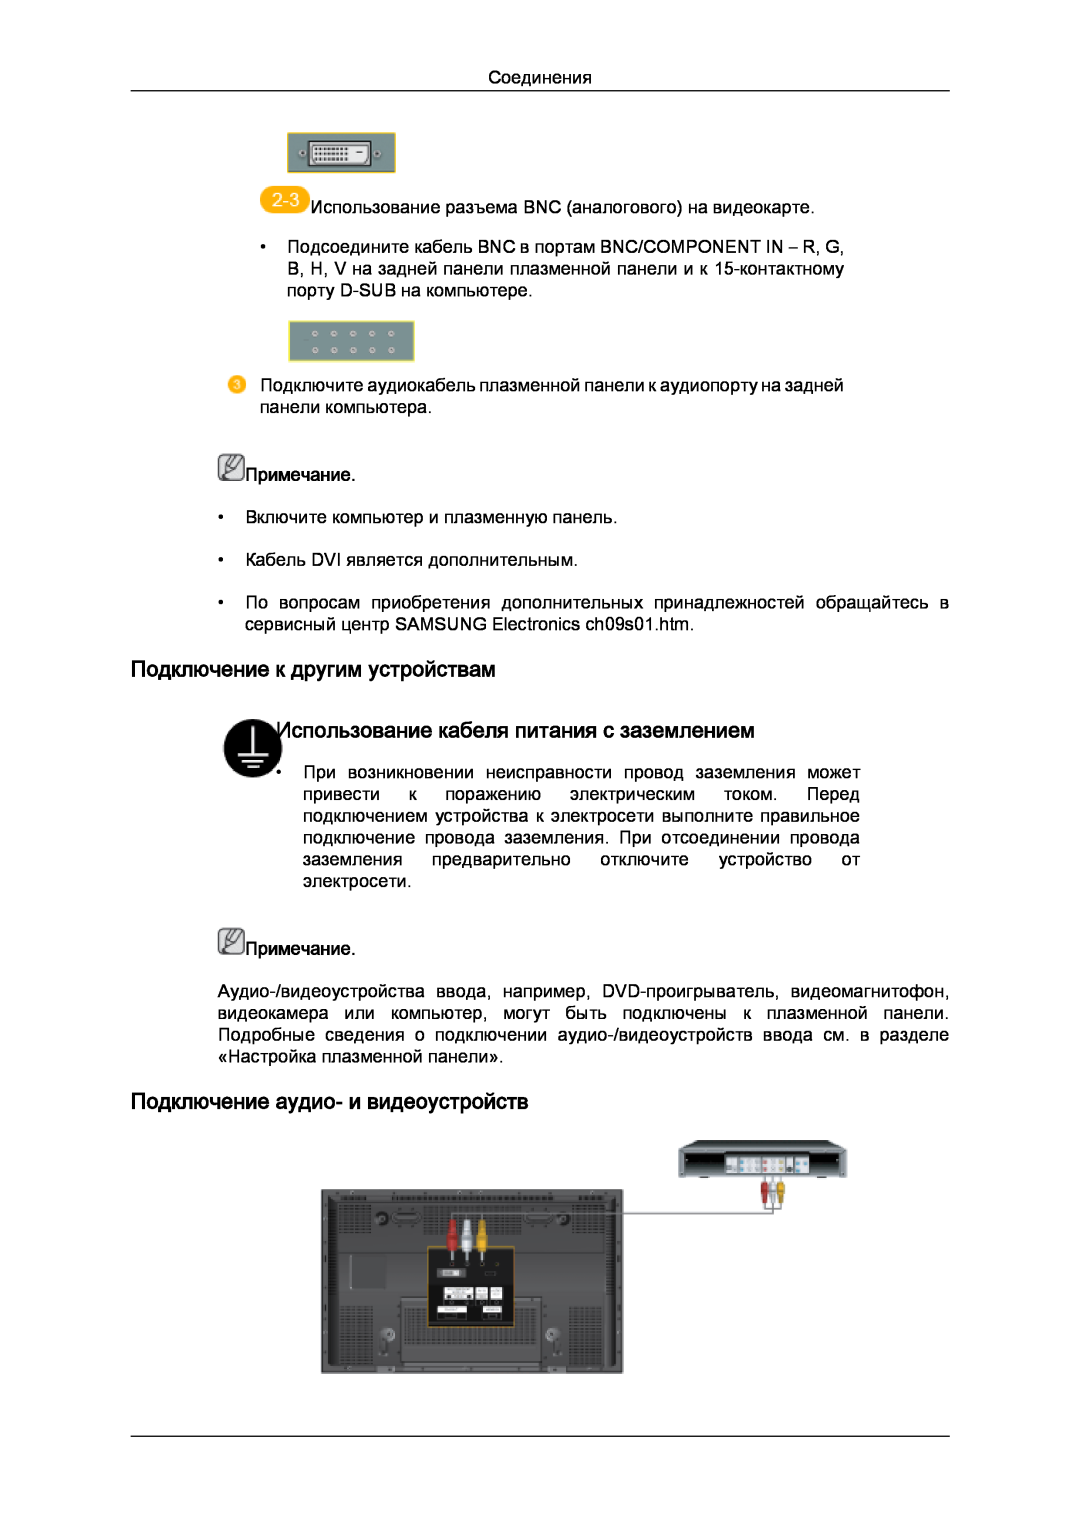 Samsung PH50KPPLBF/EN manual Подключение к другим устройствам, Использование кабеля питания с заземлением, Примечание 